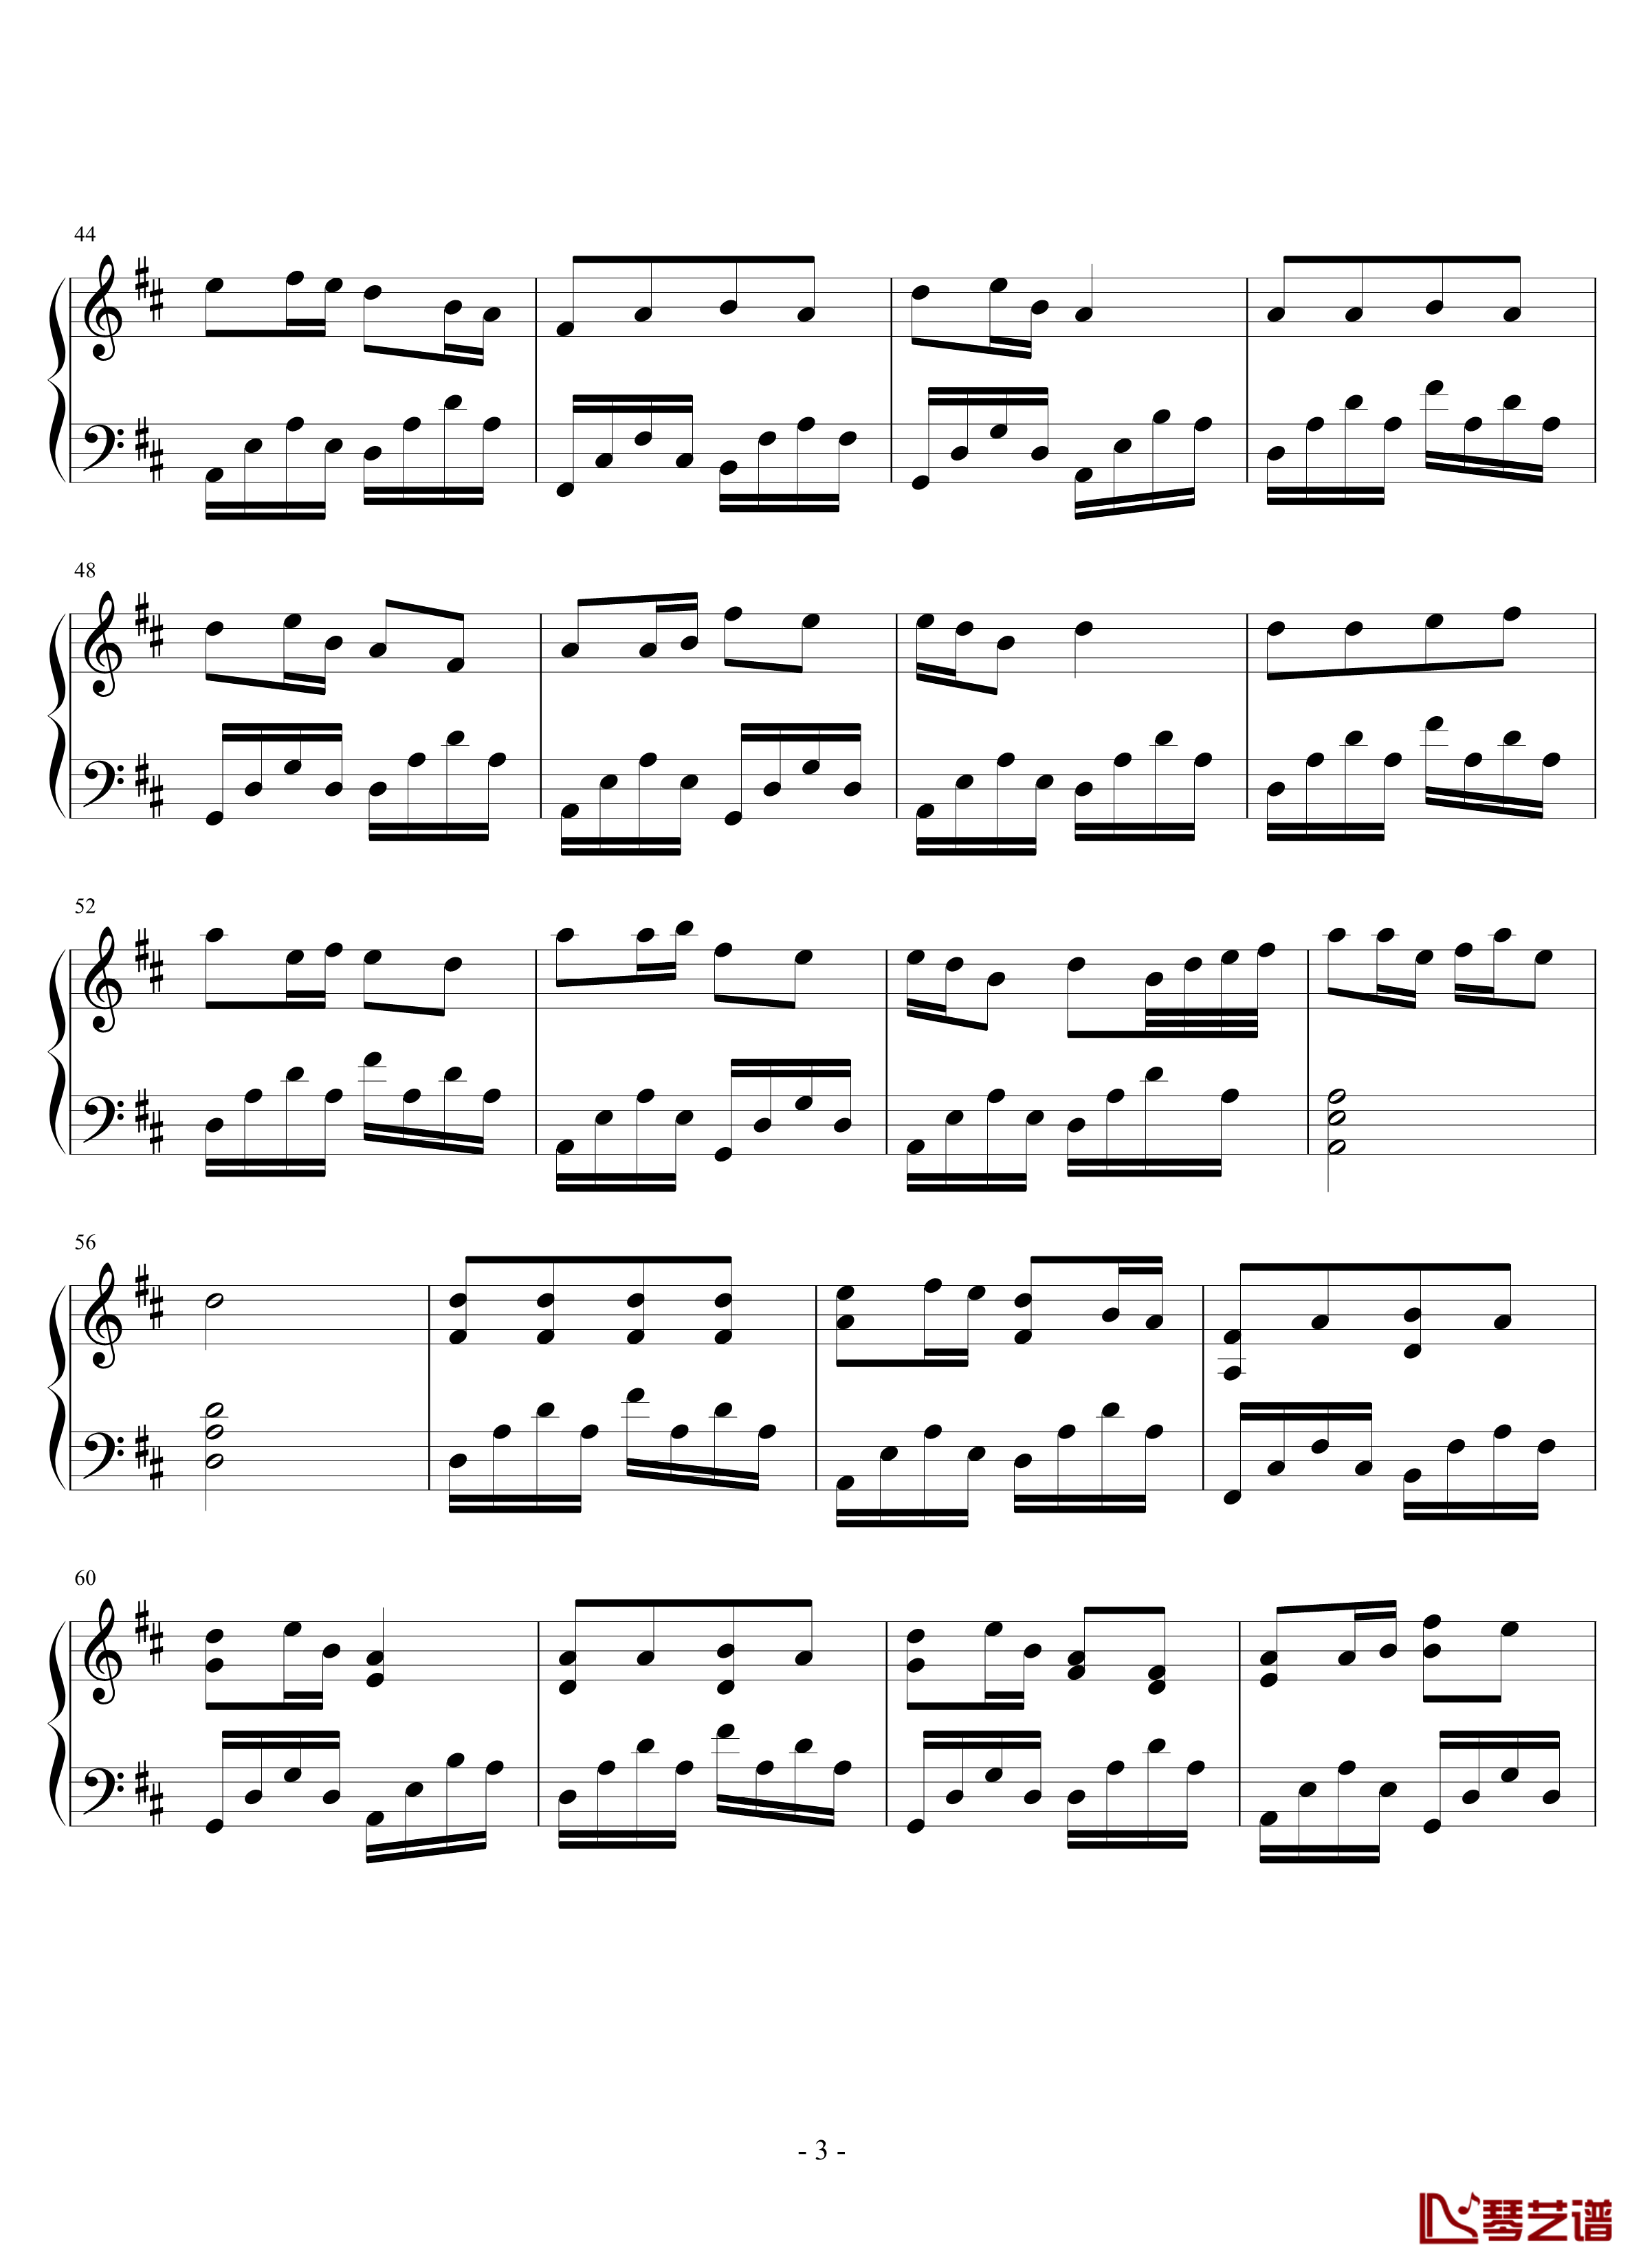 观音心赞钢琴谱-2.0完美版-佛教音乐3